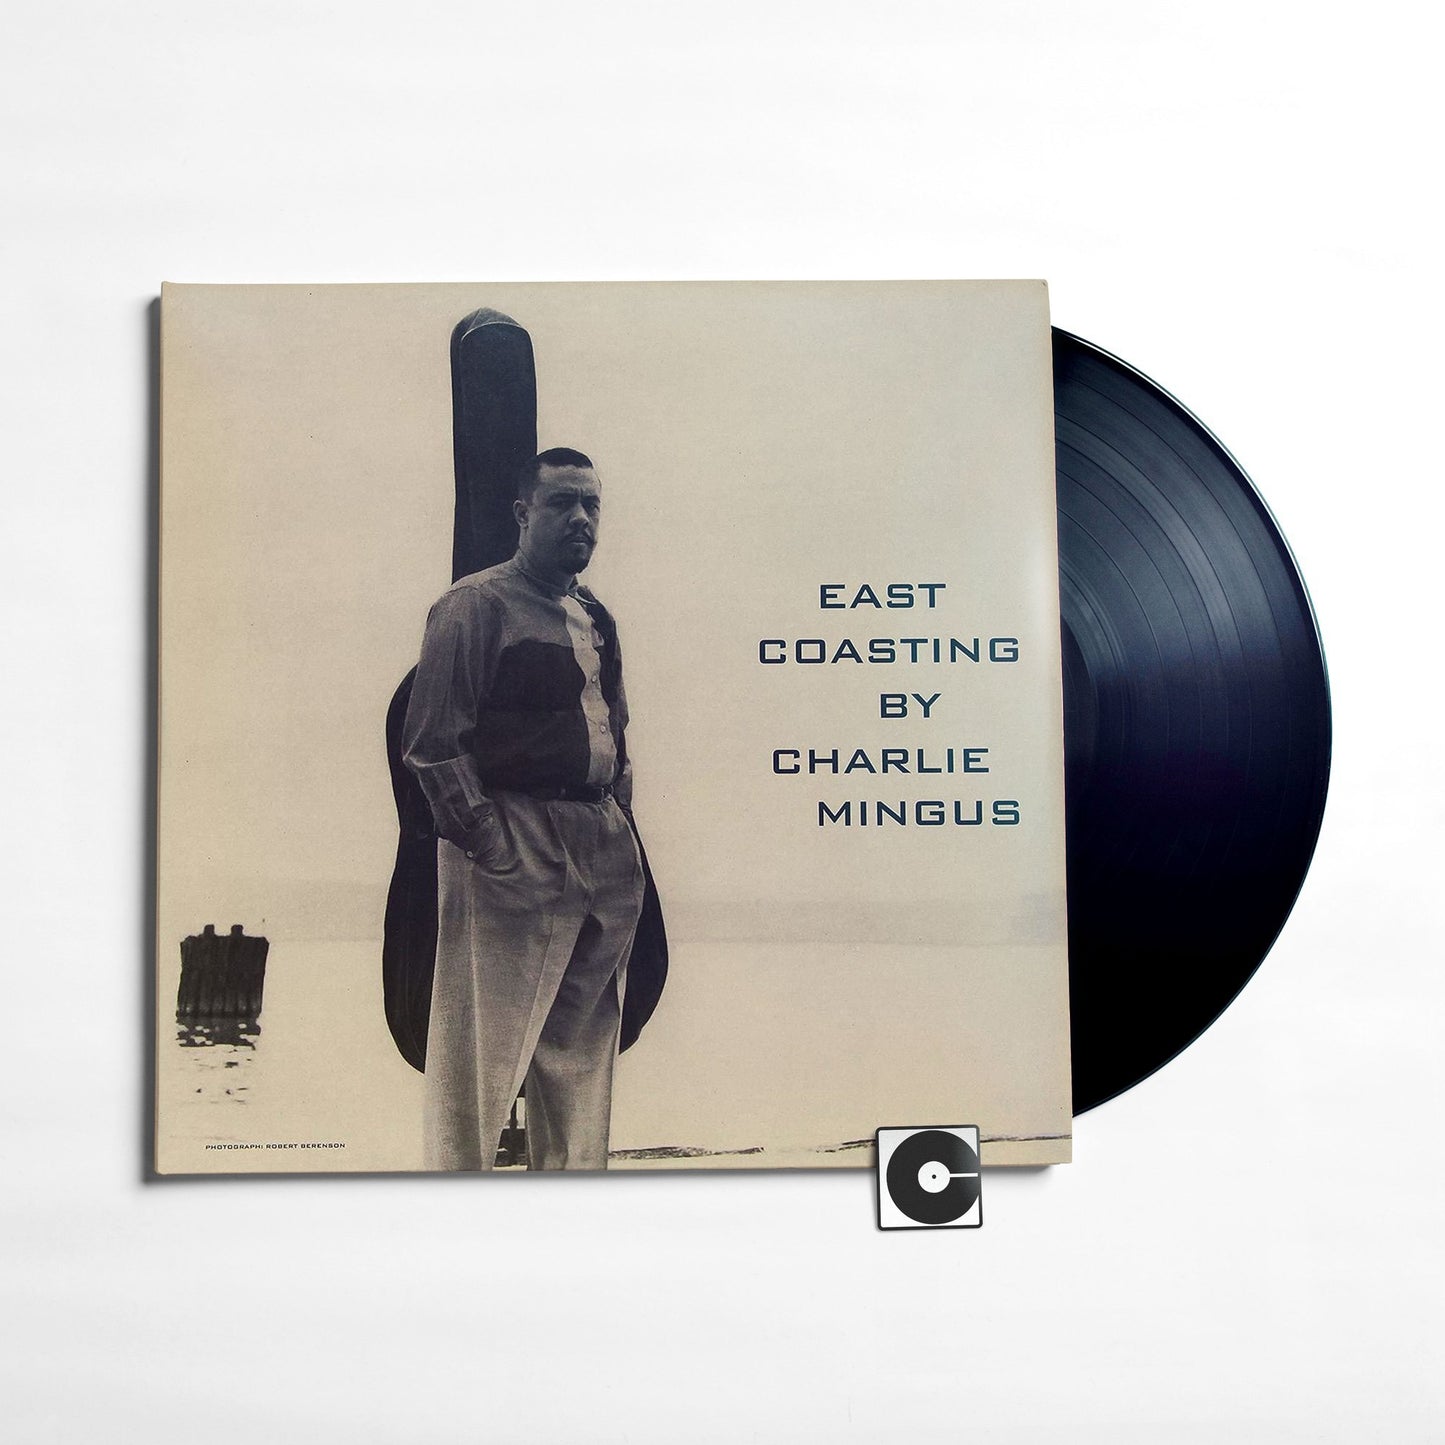 Charles Mingus - "East Coasting" Pure Pleasure